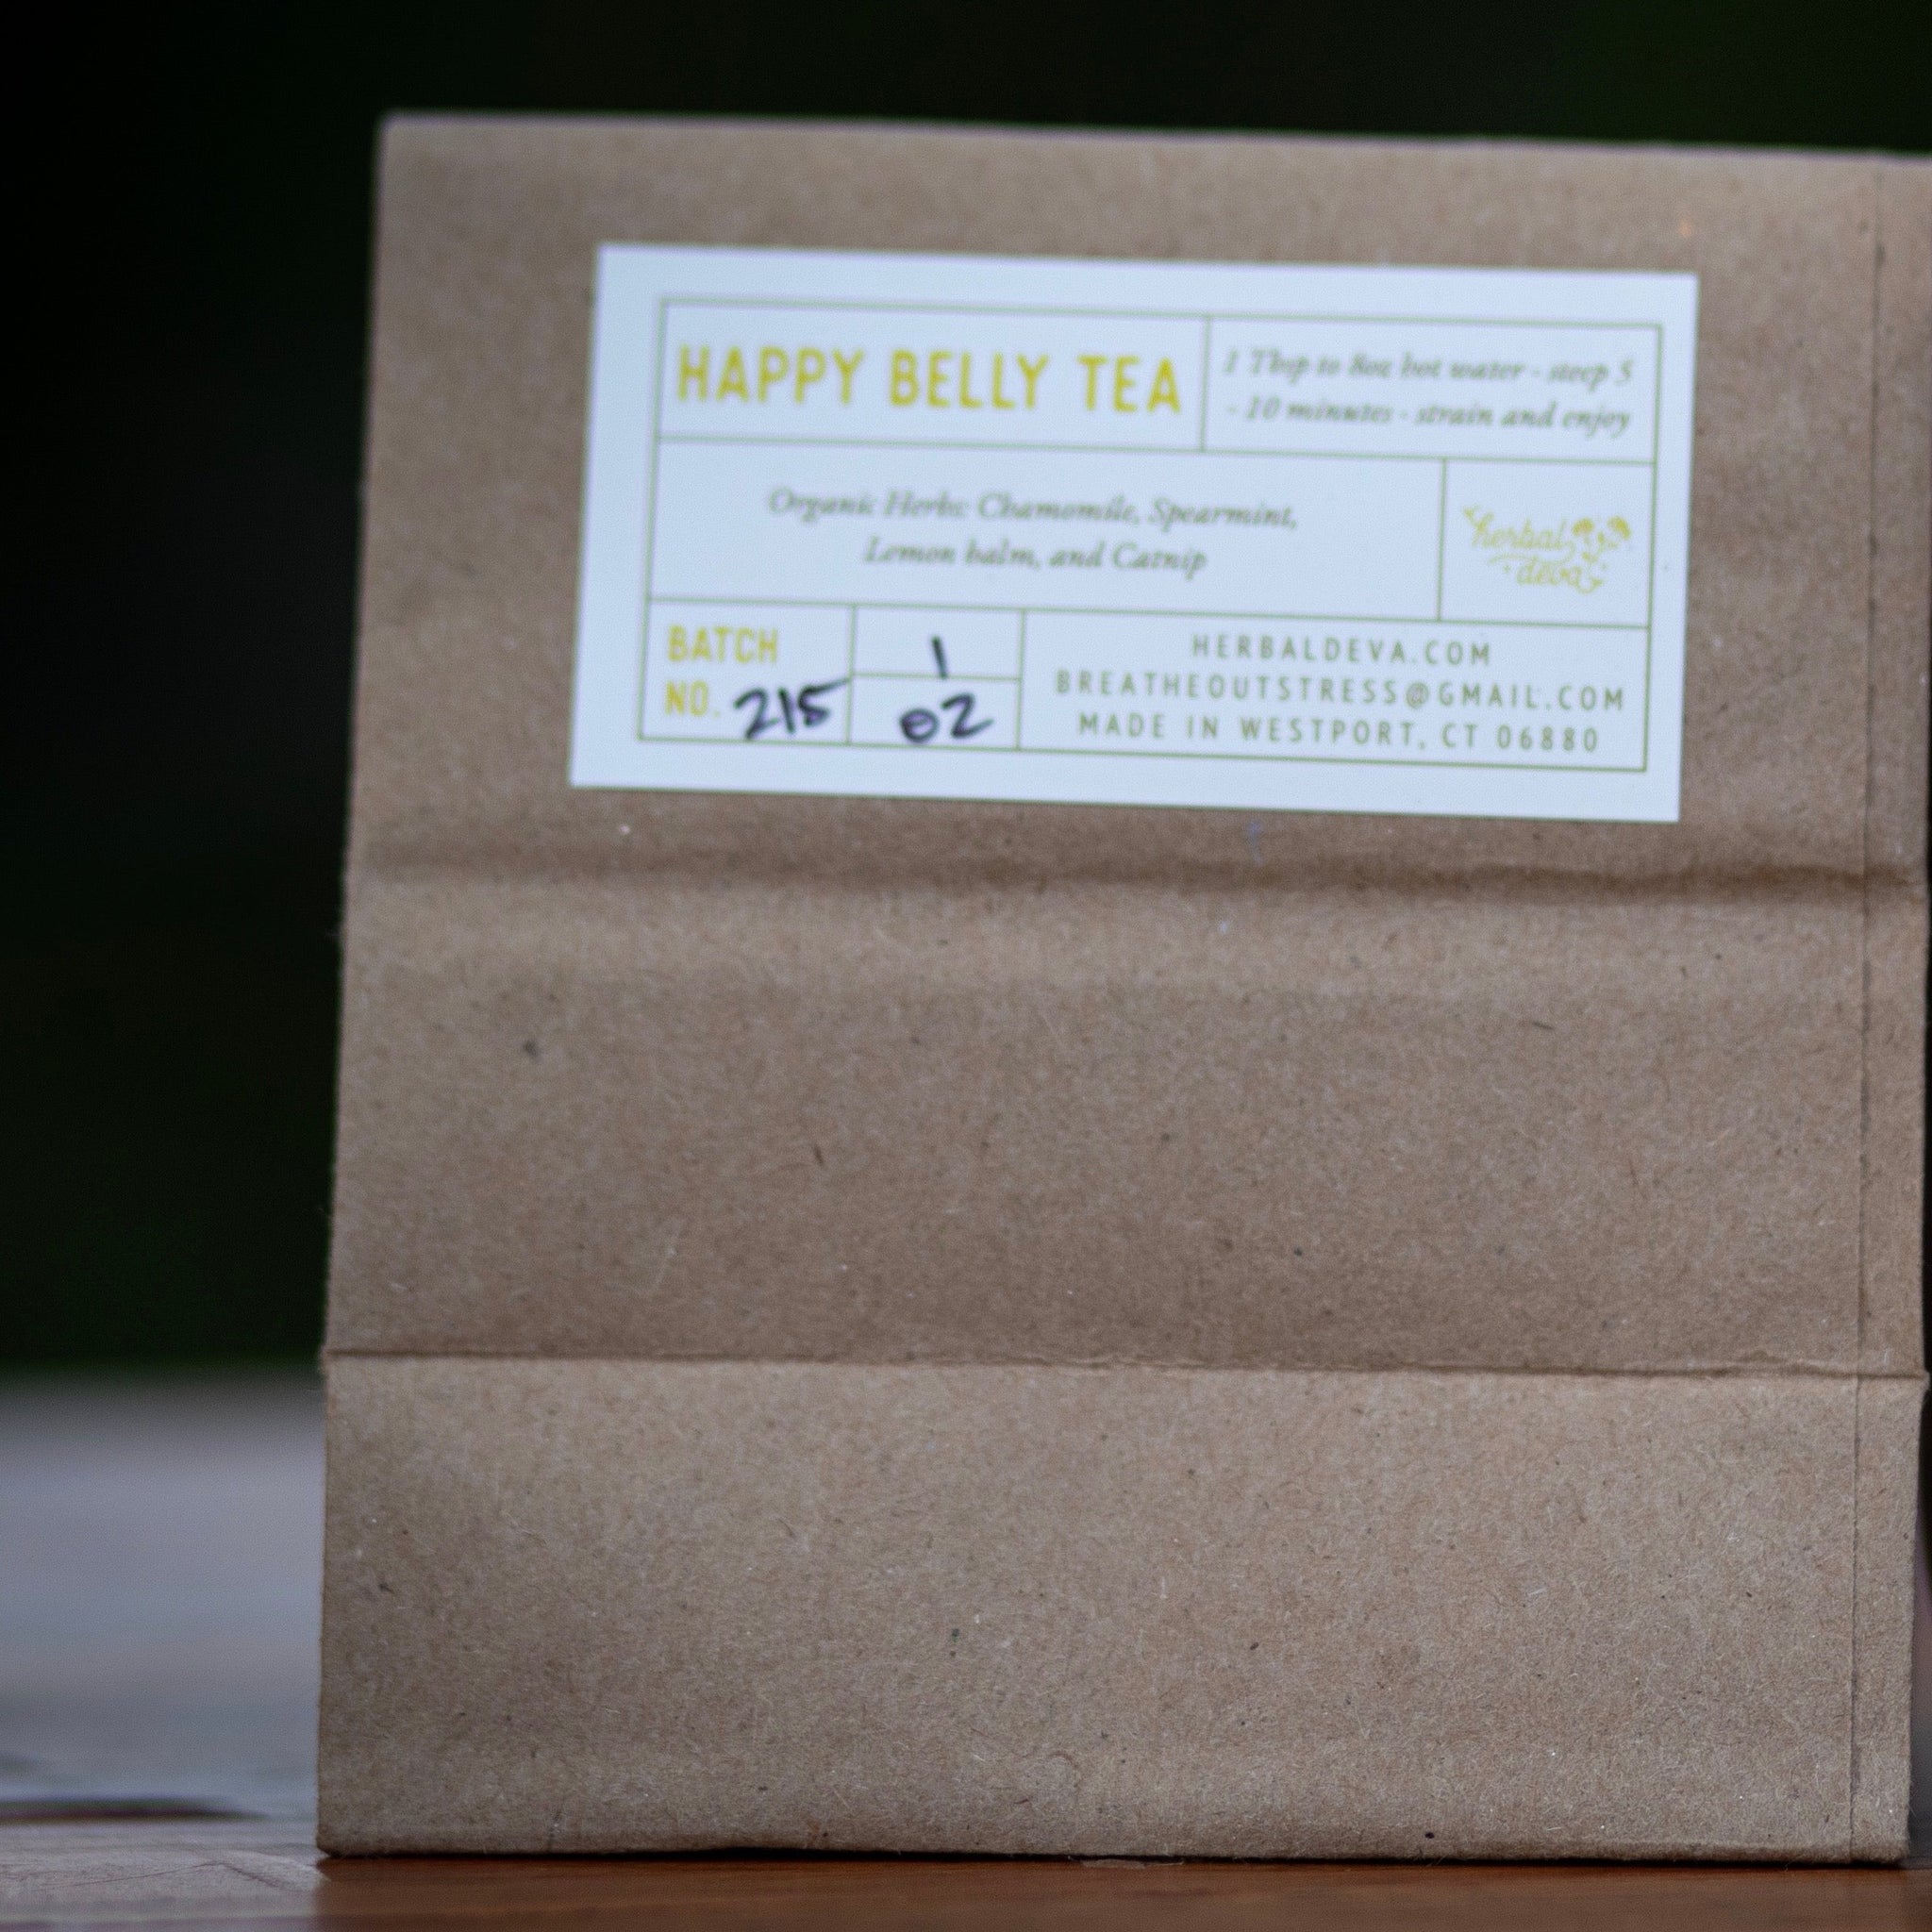 Happy Belly Tea in kraft bag